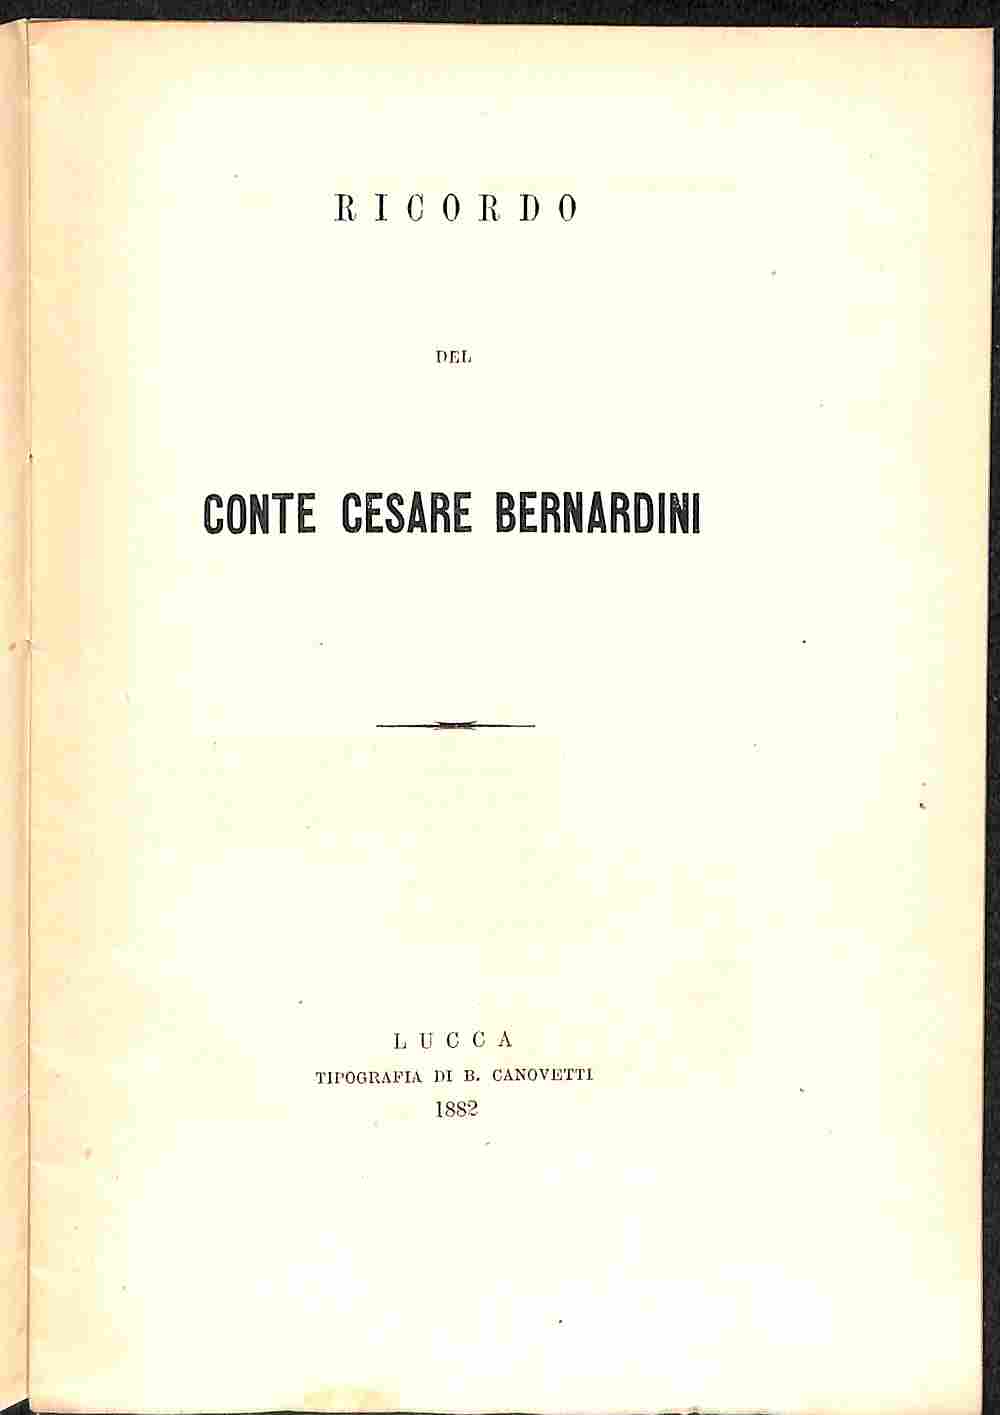 Ricordo del Conte Cesare Bernardini